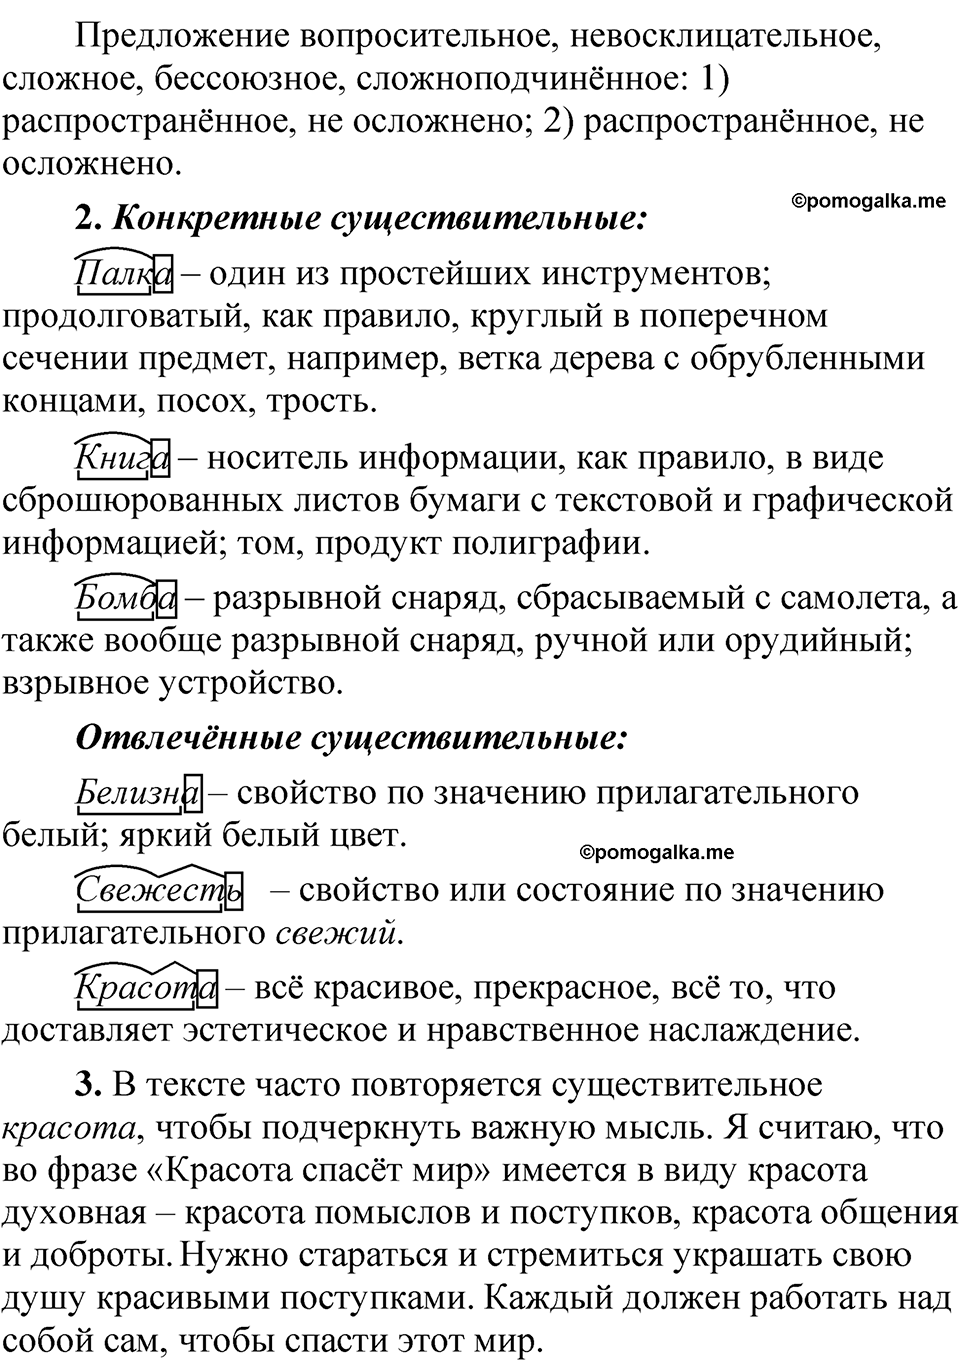 страница 81 Страница 81 Читаем, говорим, пишем русский язык 5 класс Быстрова, Кибирева 2 часть 2021 год